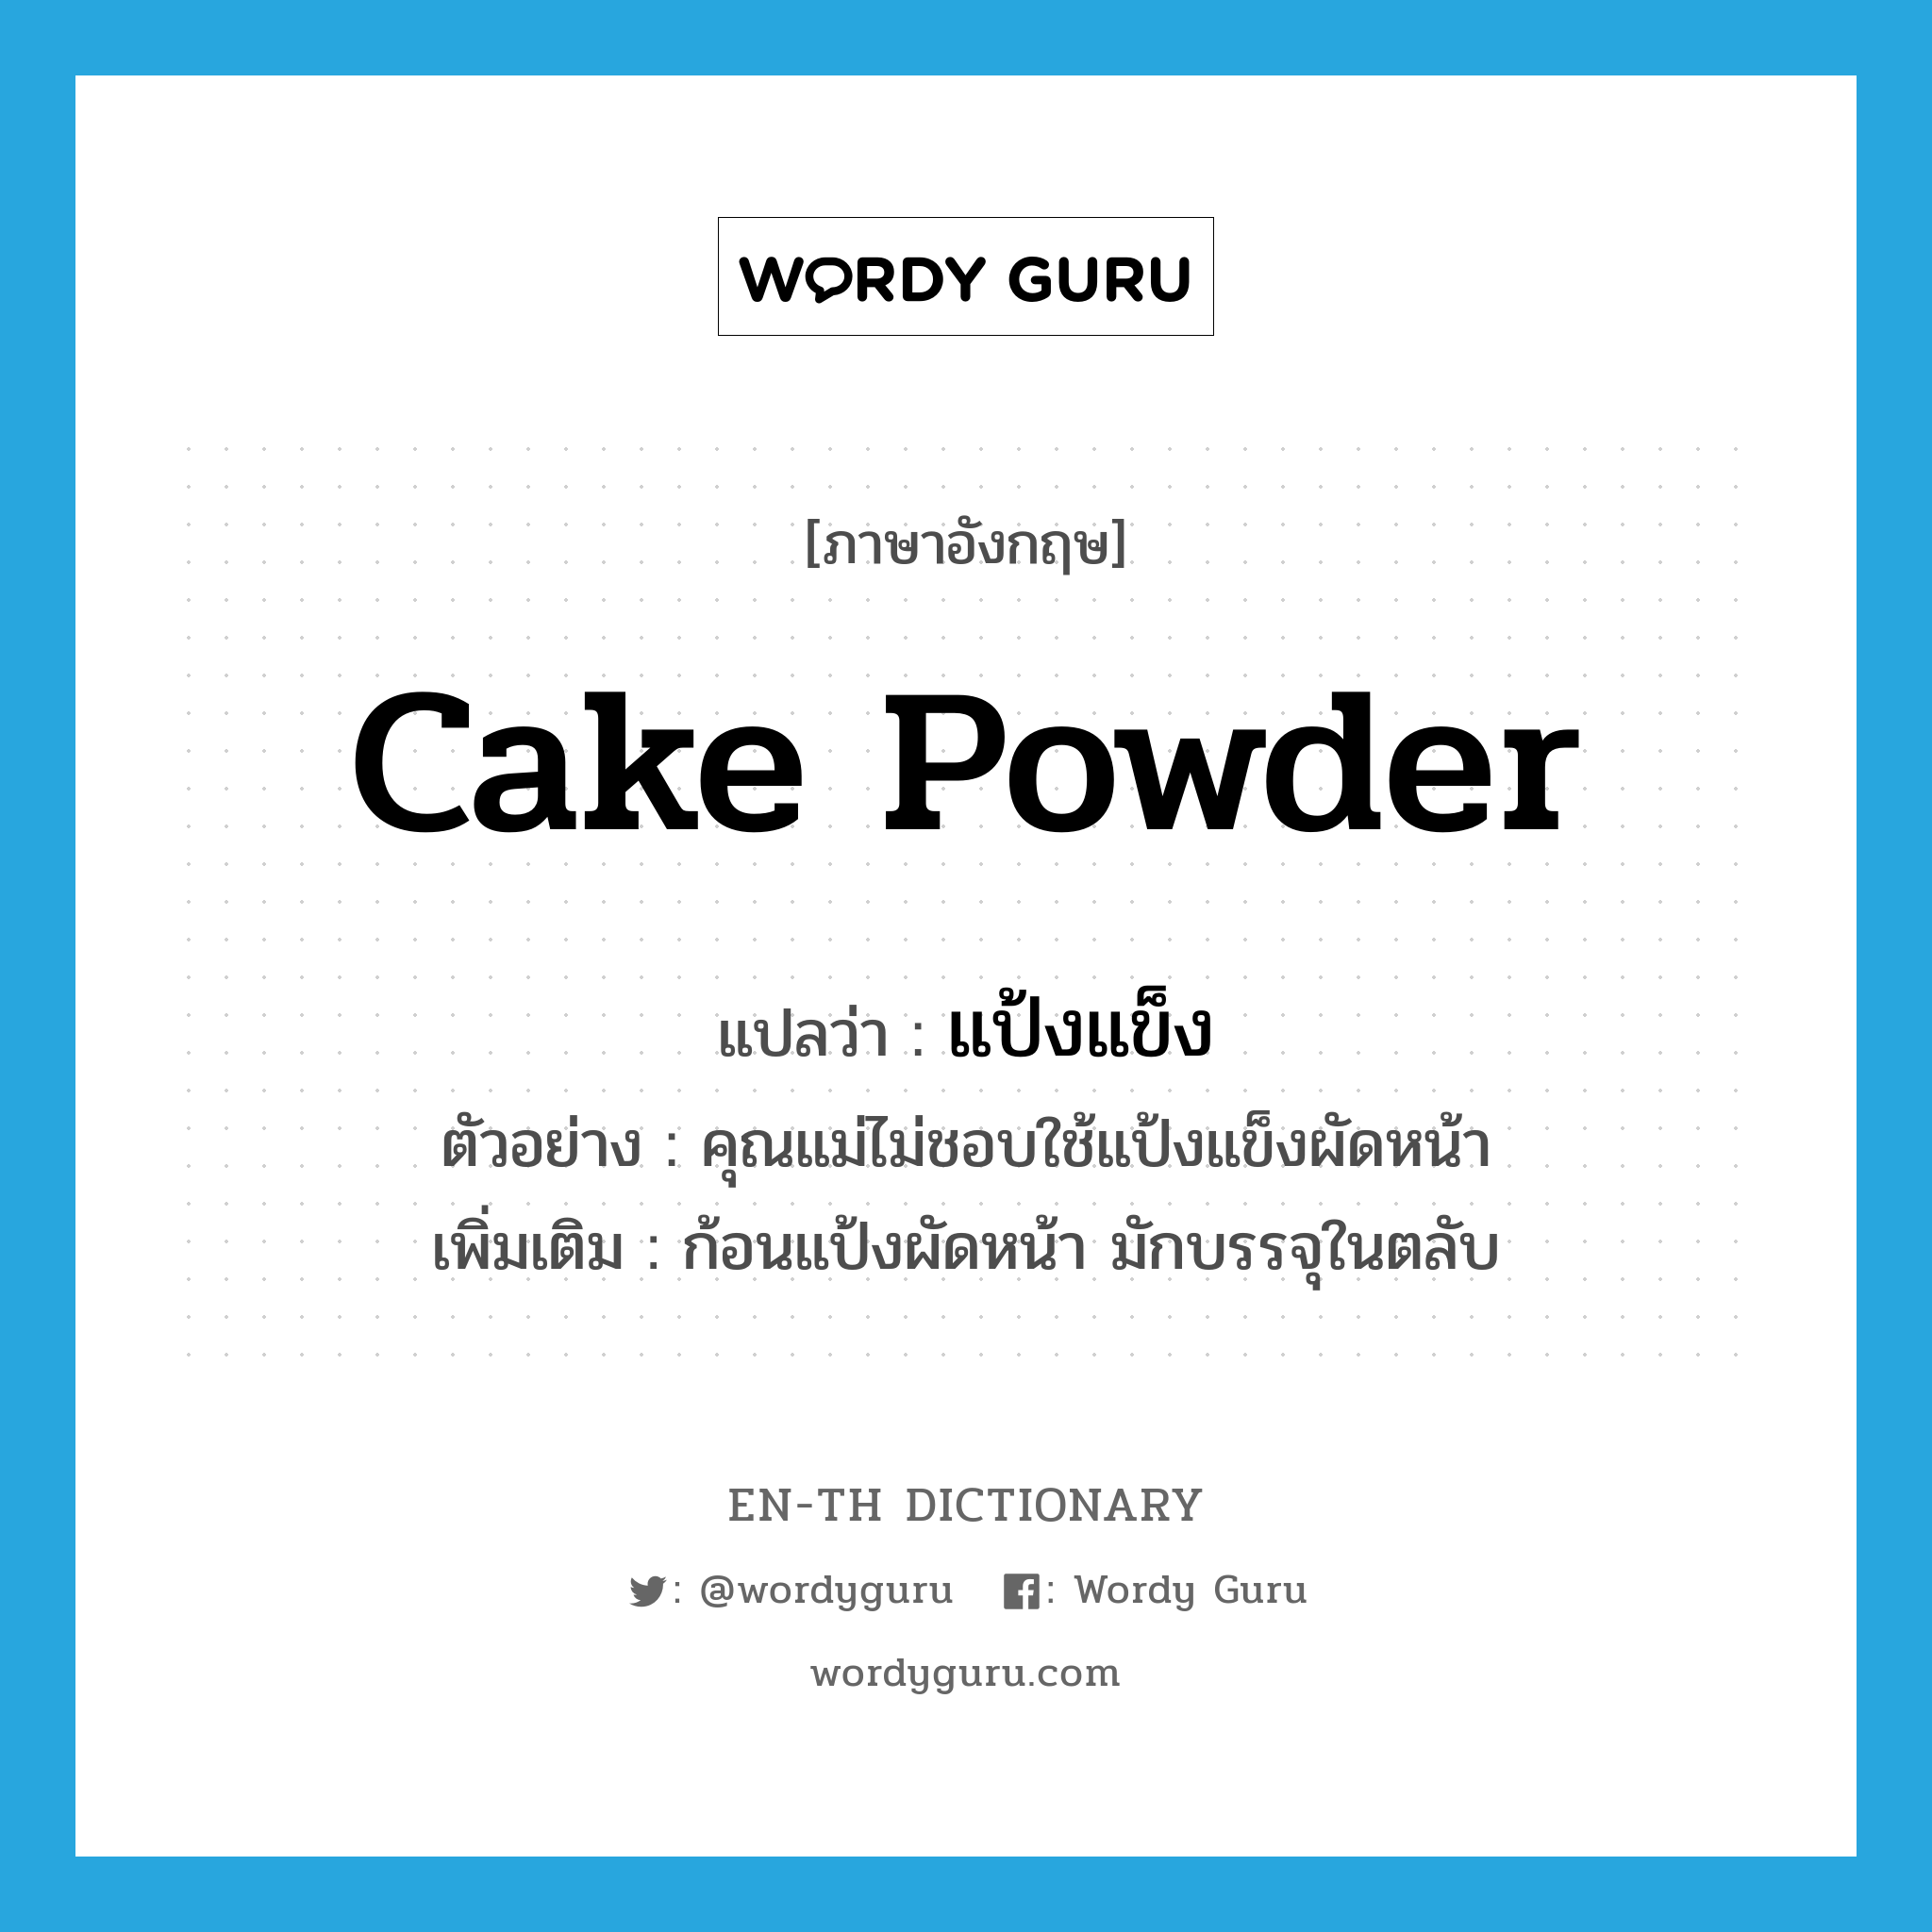 cake powder แปลว่า?, คำศัพท์ภาษาอังกฤษ cake powder แปลว่า แป้งแข็ง ประเภท N ตัวอย่าง คุณแม่ไม่ชอบใช้แป้งแข็งผัดหน้า เพิ่มเติม ก้อนแป้งผัดหน้า มักบรรจุในตลับ หมวด N